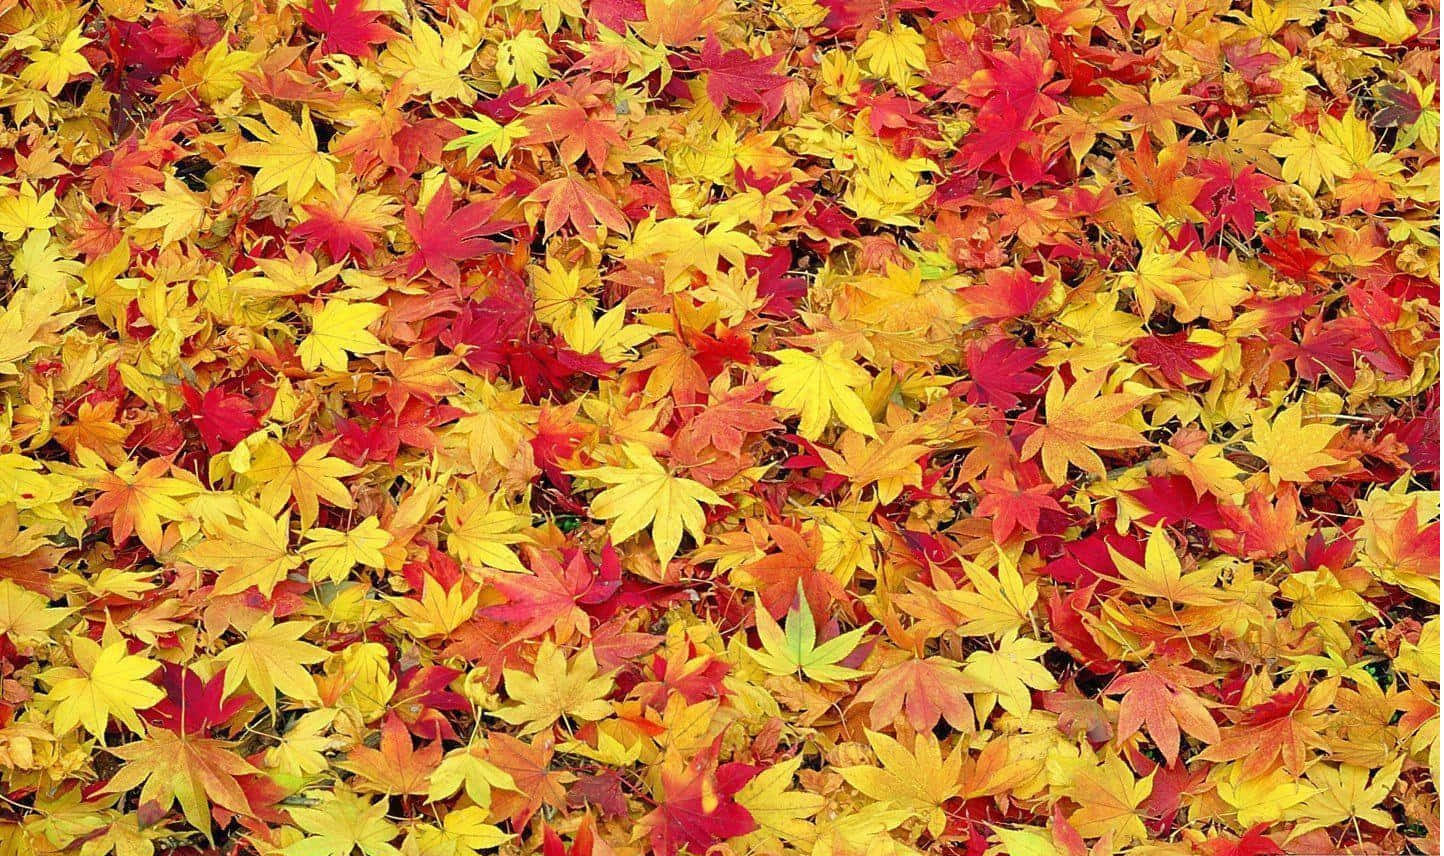 Mantenhaseus Olhos Voltados Para O Céu E Admire As Coloridas Folhas De Outono Acima.